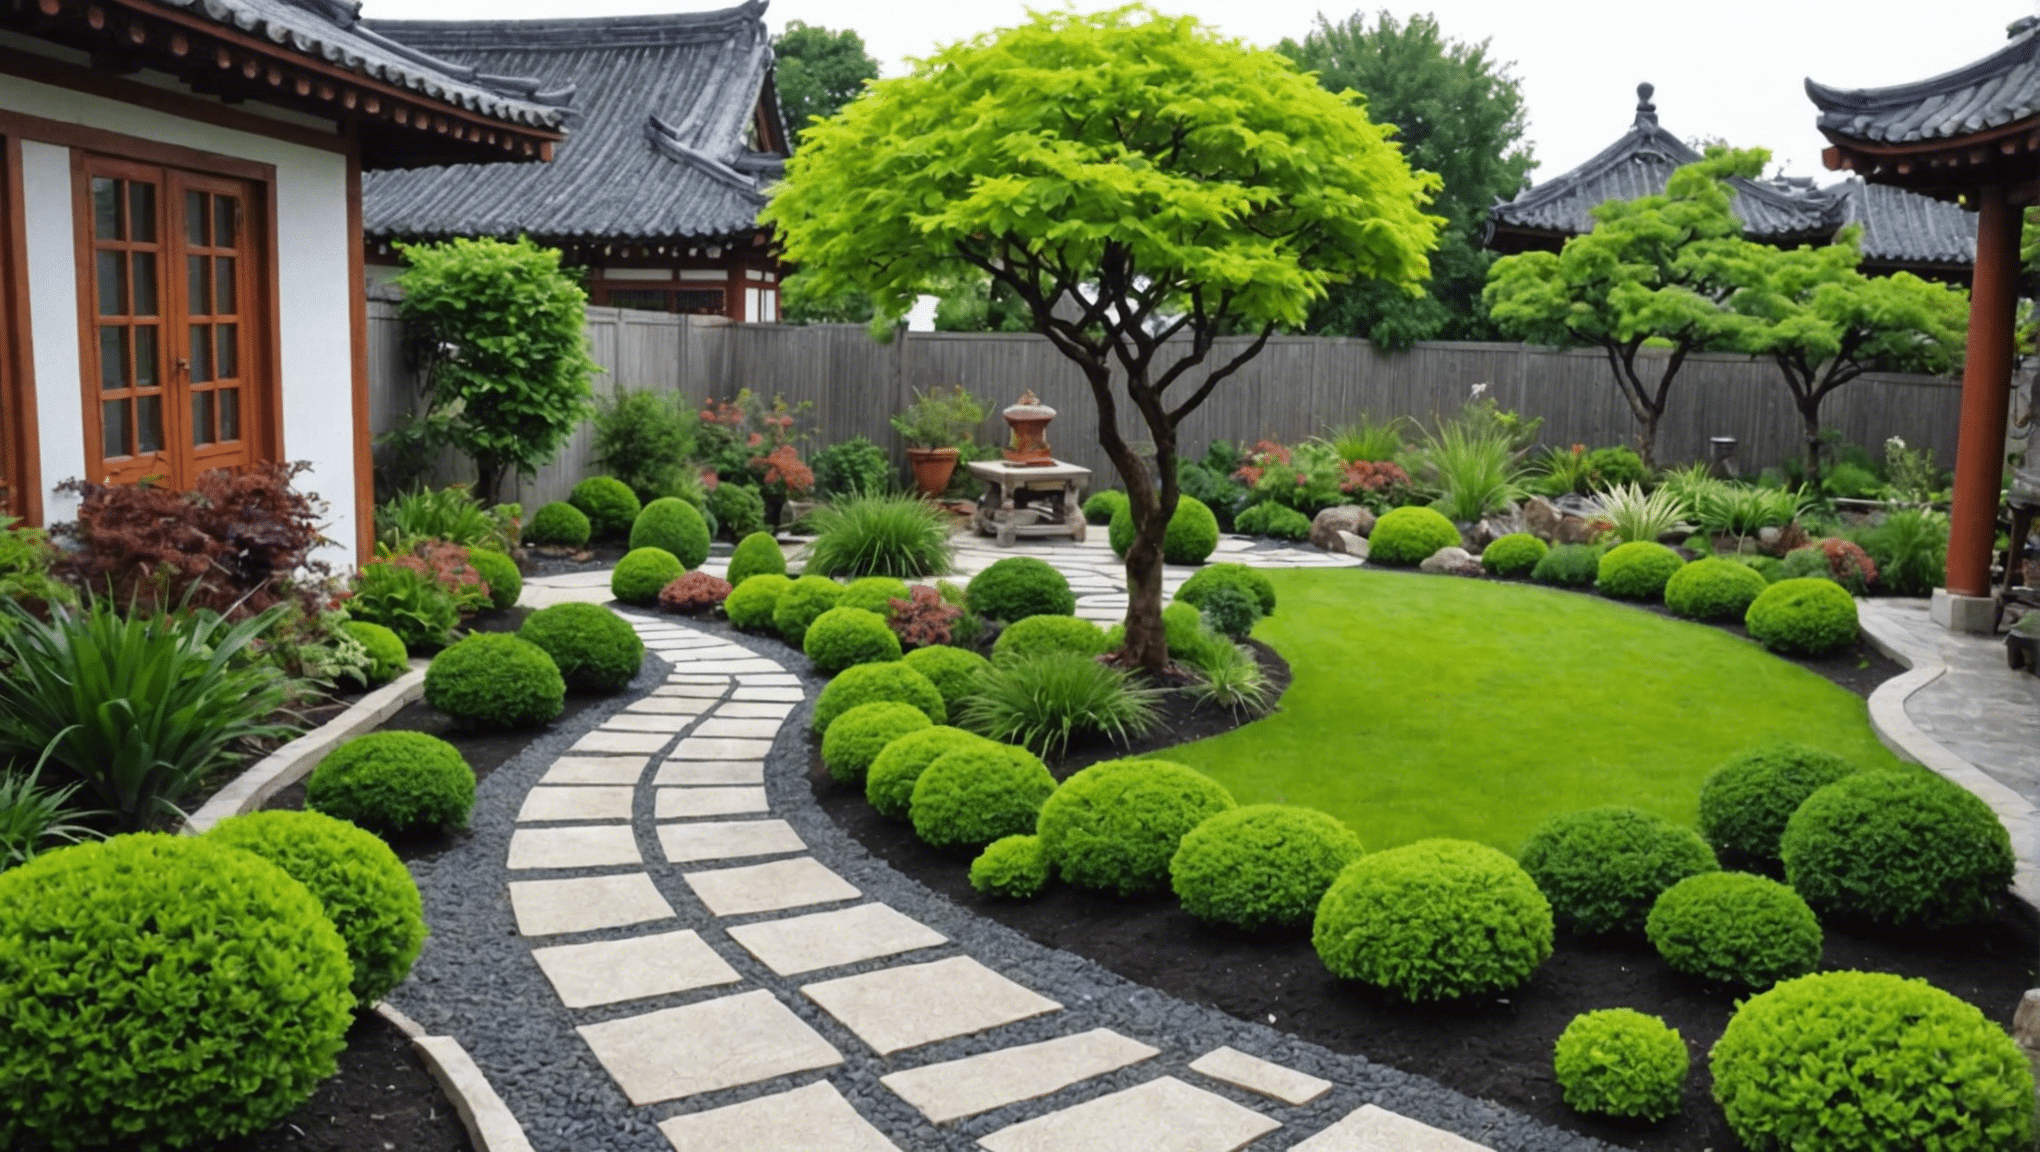 descubra ideias criativas e inspiradoras de jardinagem asiática para o seu espaço ao ar livre com nossas dicas e inspiração de especialistas. desde jardins japoneses tradicionais até designs zen modernos, encontre a inspiração perfeita para o seu oásis ao ar livre.